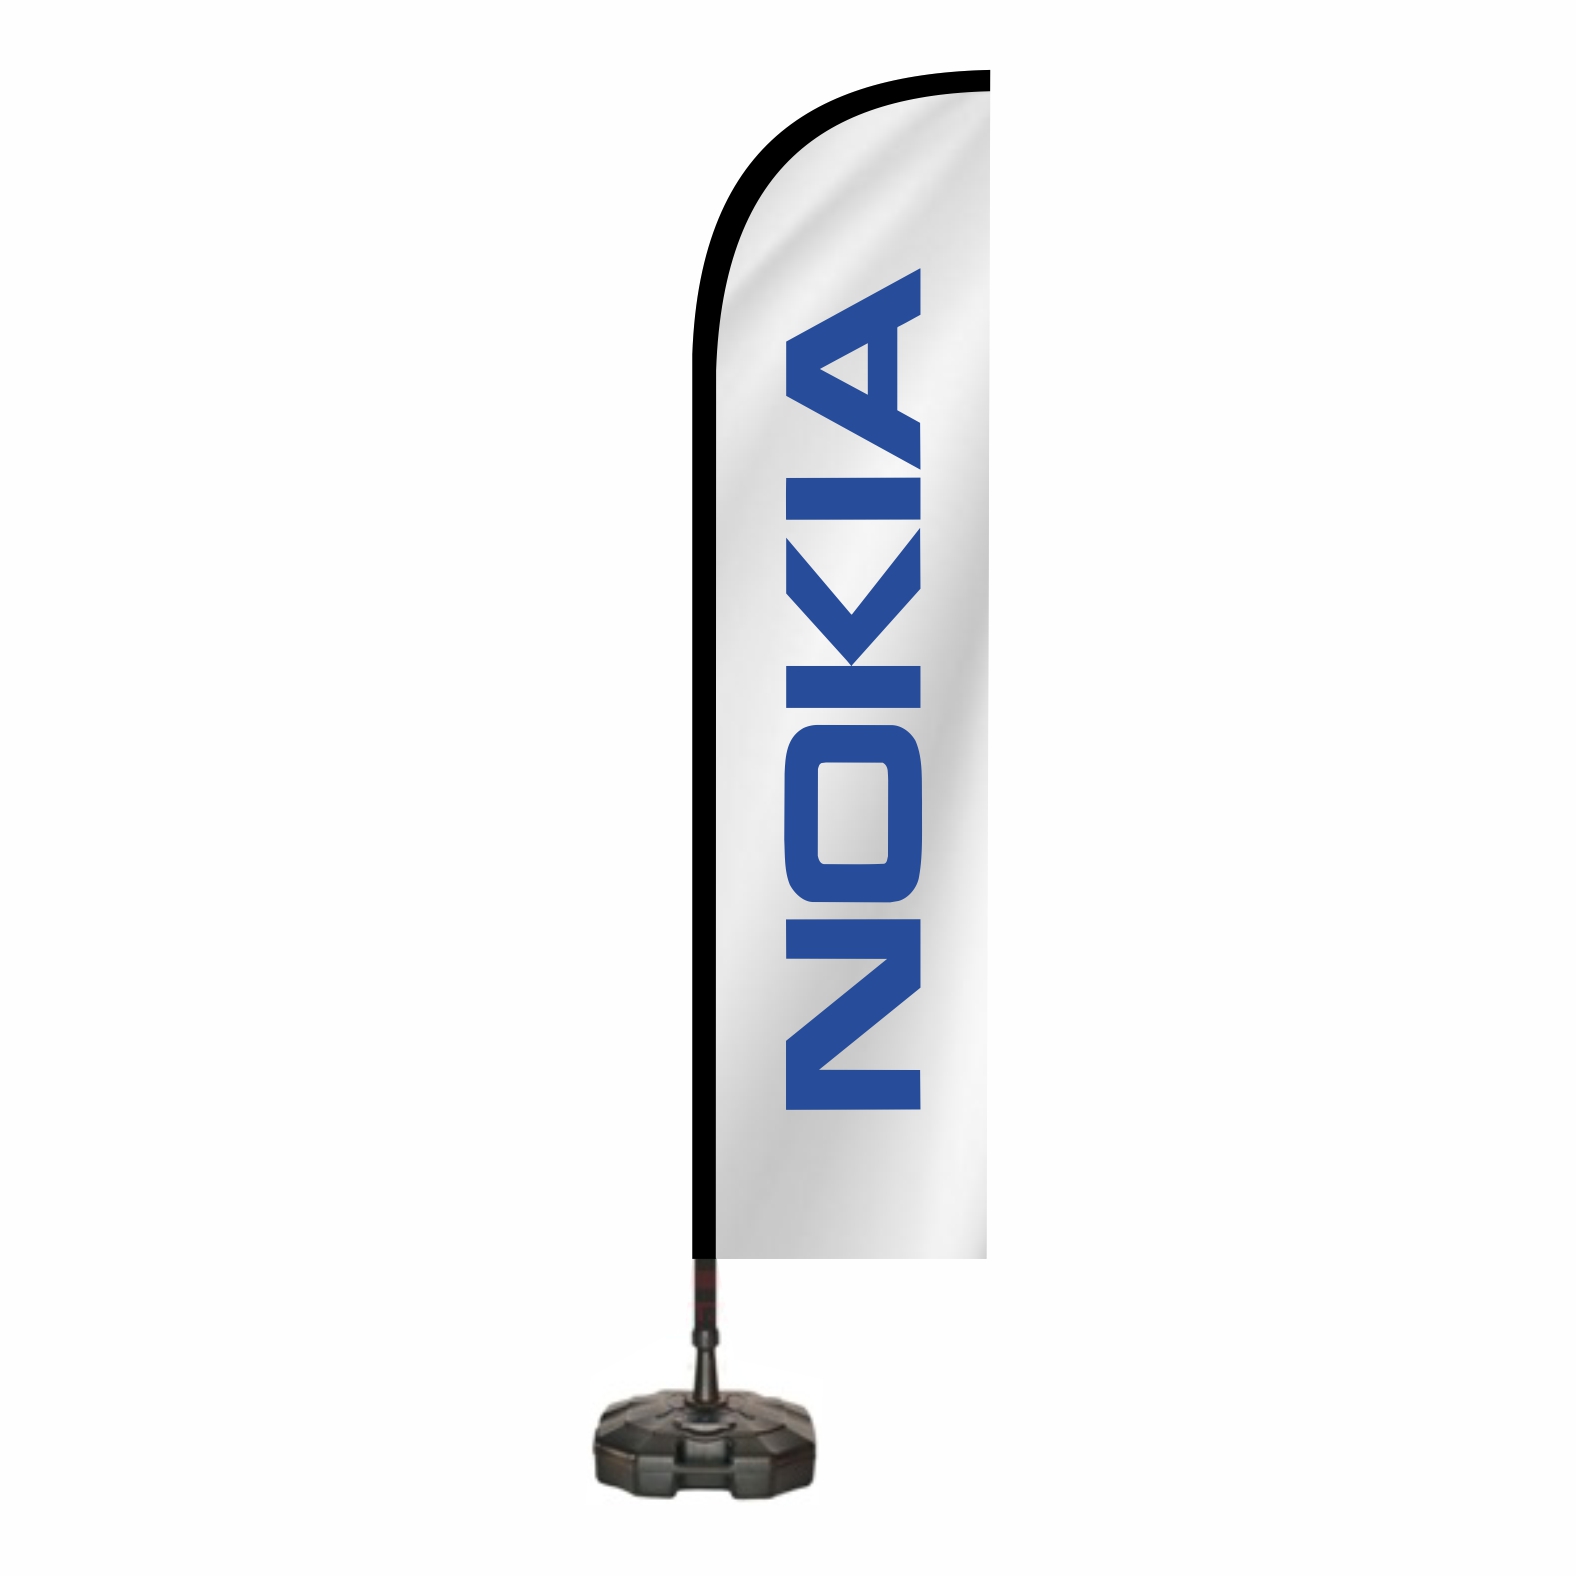 Nokia Cadde Bayra Sat Yeri